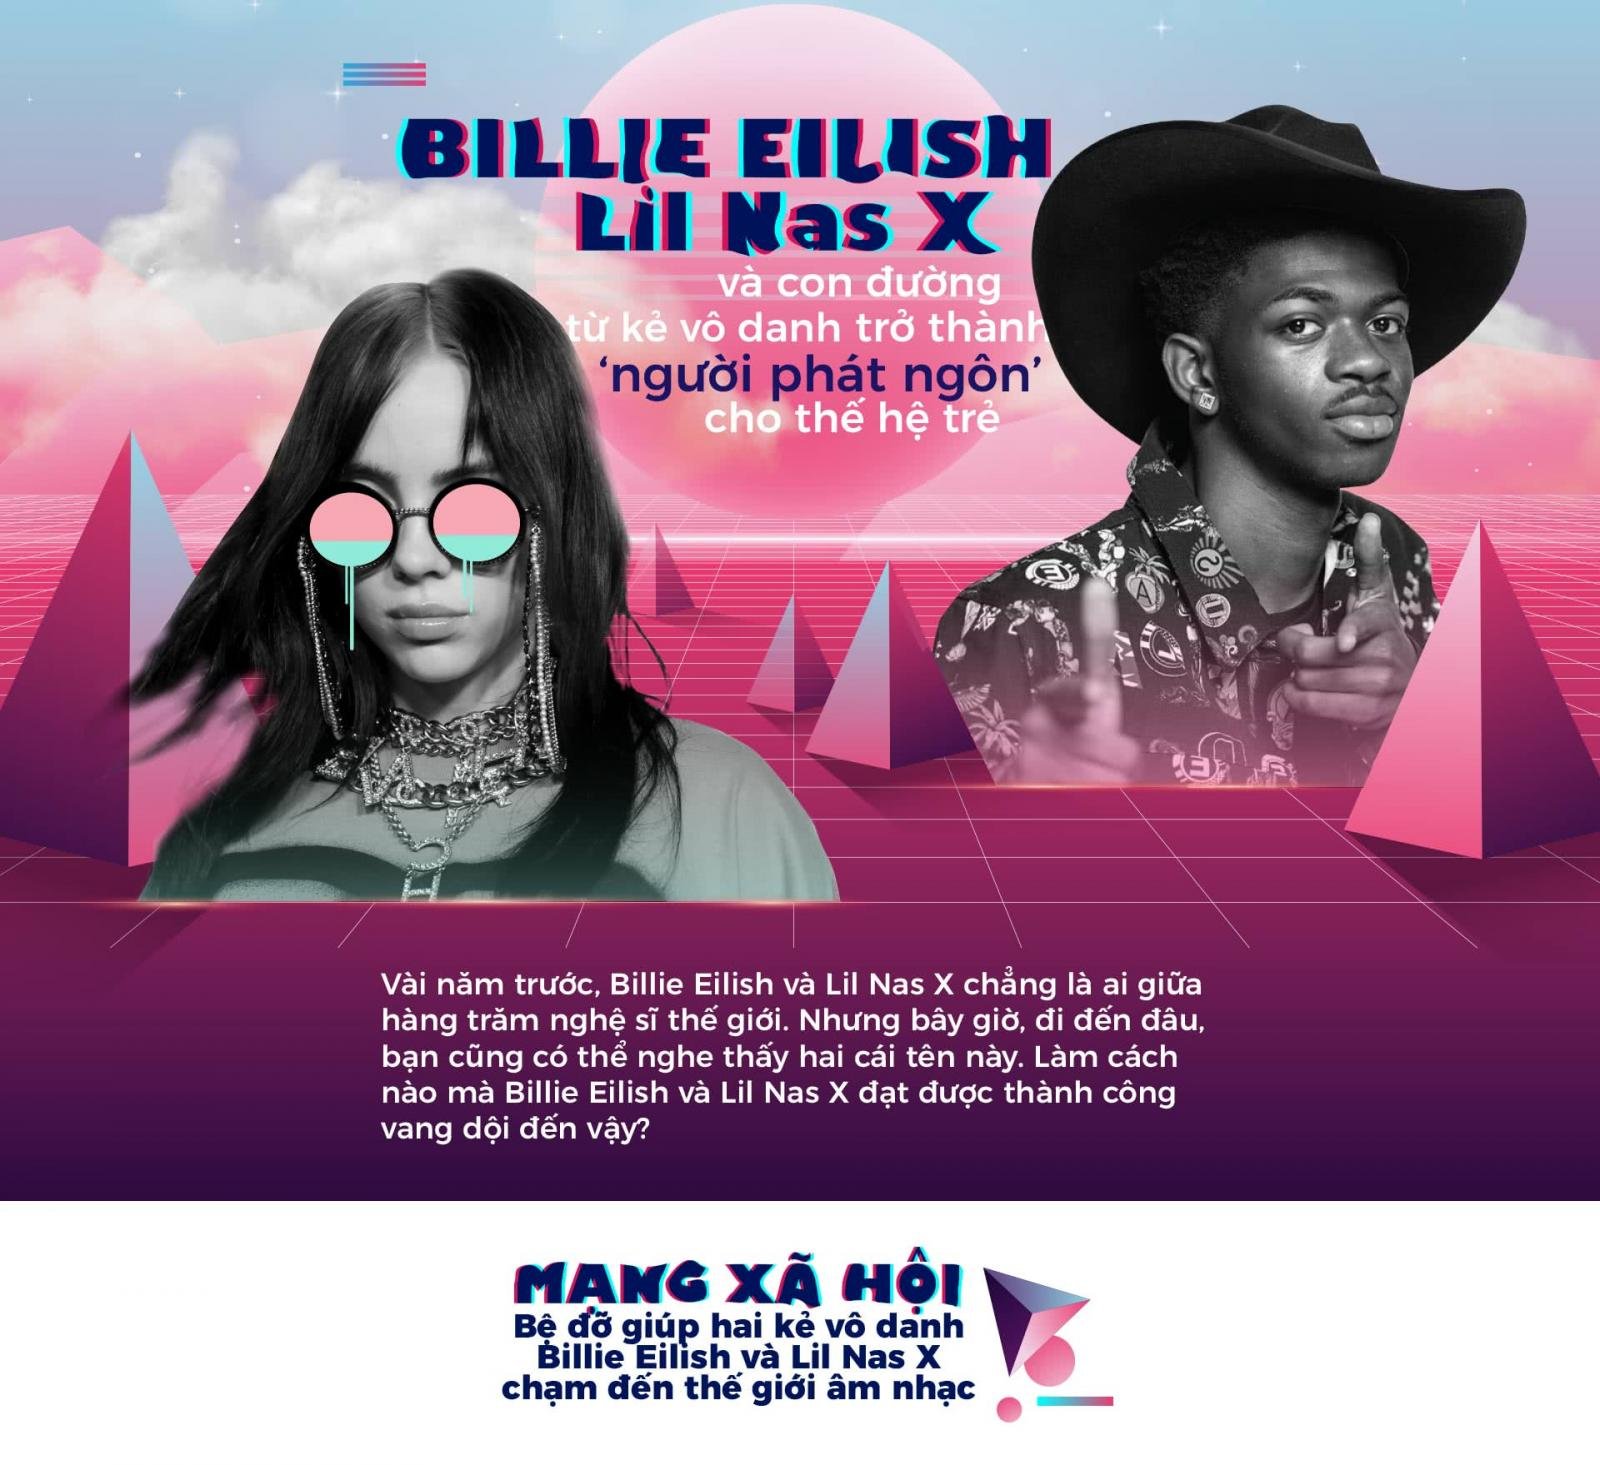 Billie Eilish, Lil Nas X và con đường từ kẻ vô danh trở thành ‘người phát ngôn’ cho thế hệ trẻ